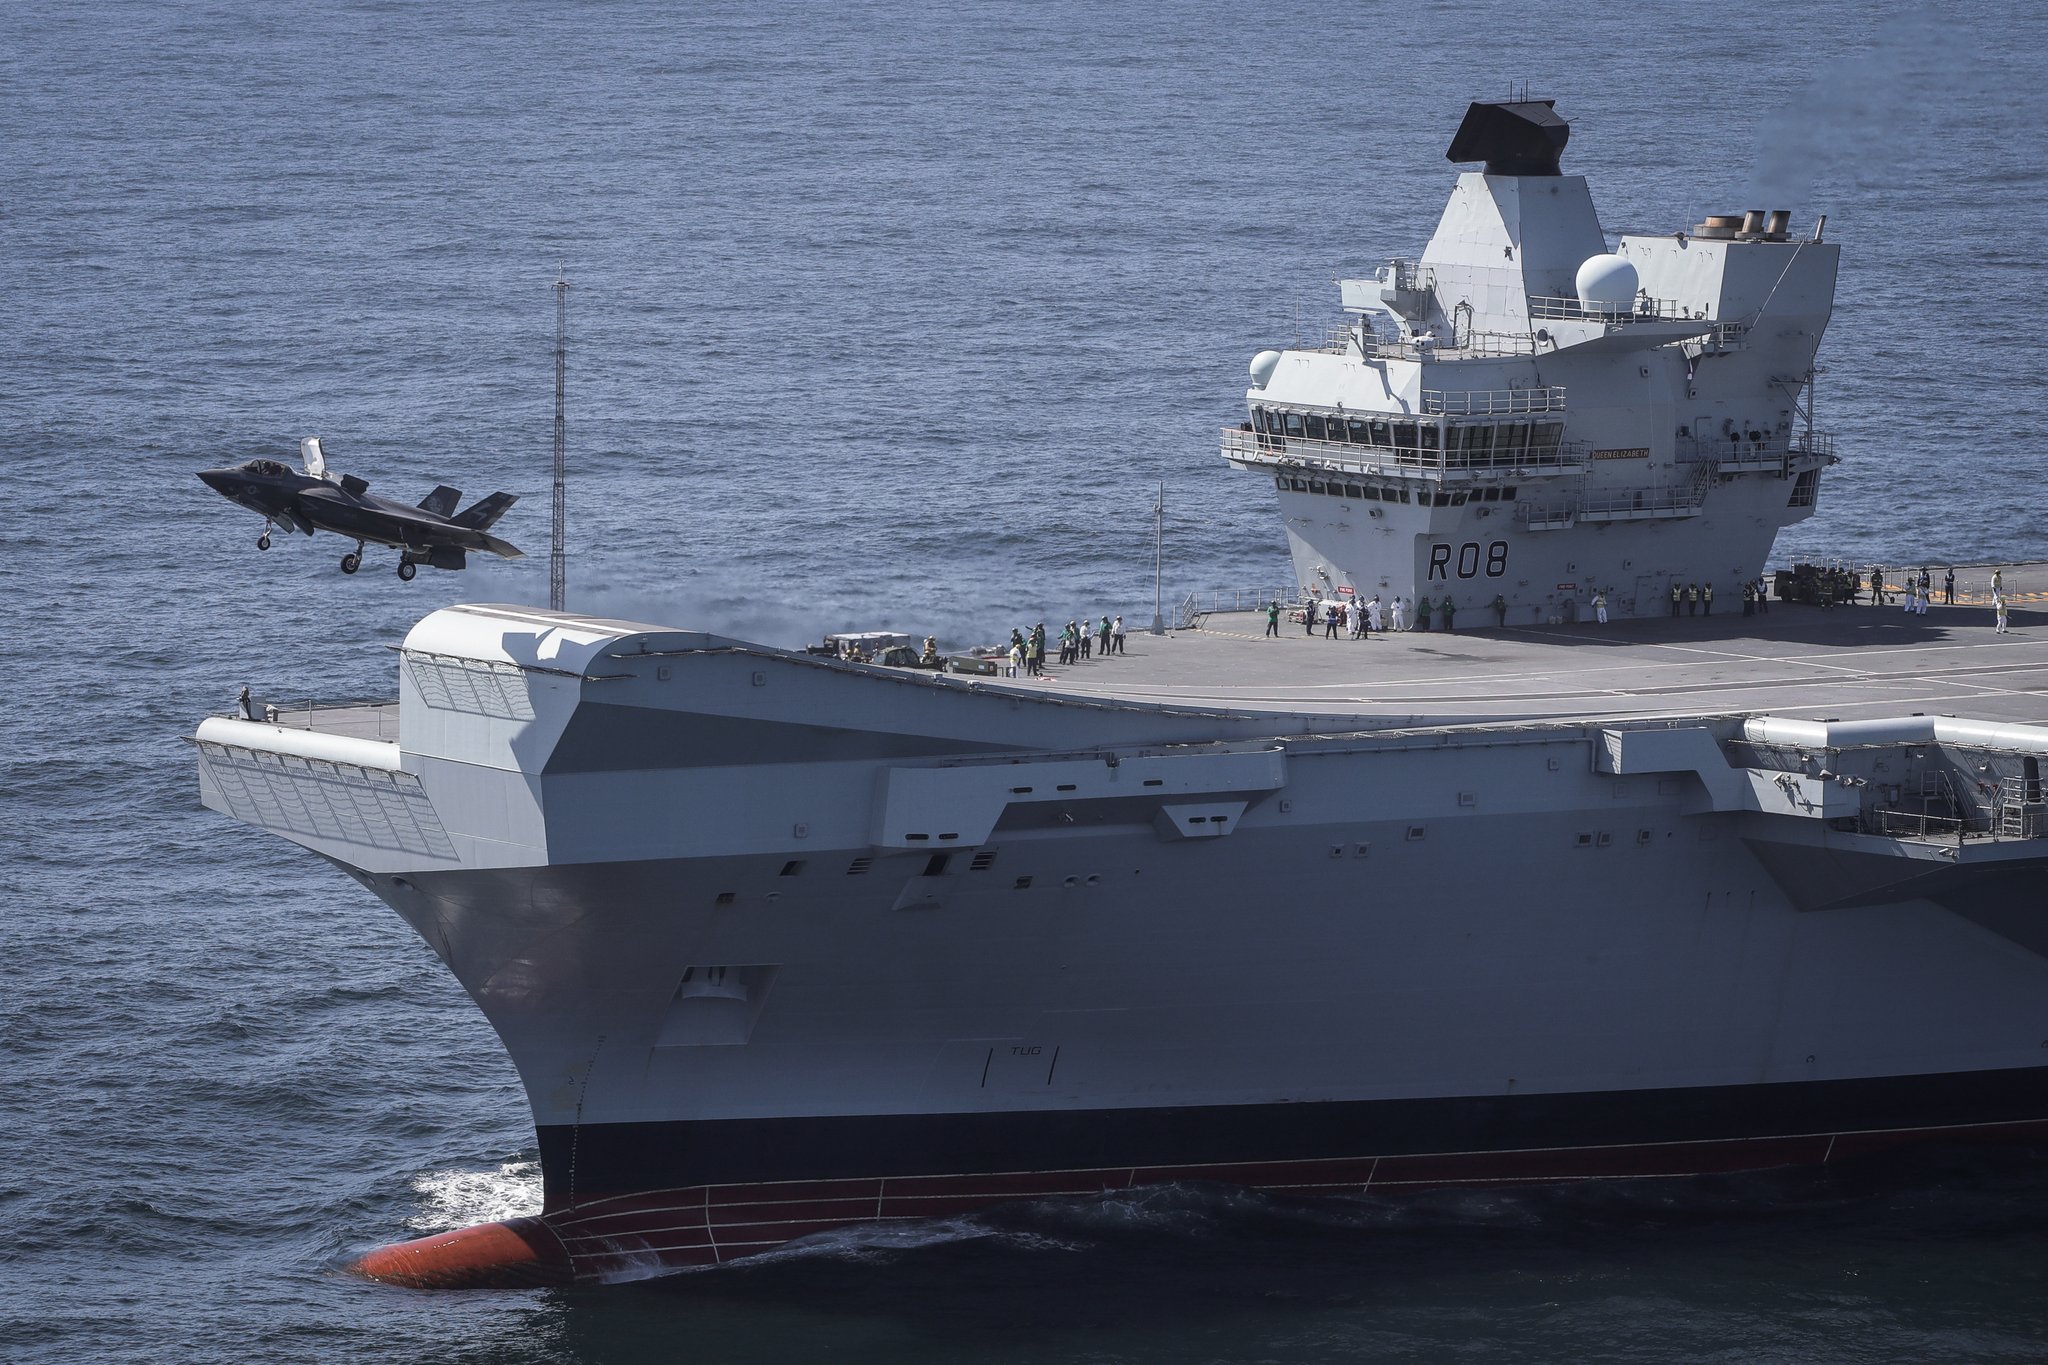 Gigantesco Porta Aviões HMS Queen Elizabeth é lançado na água [FOTOS]